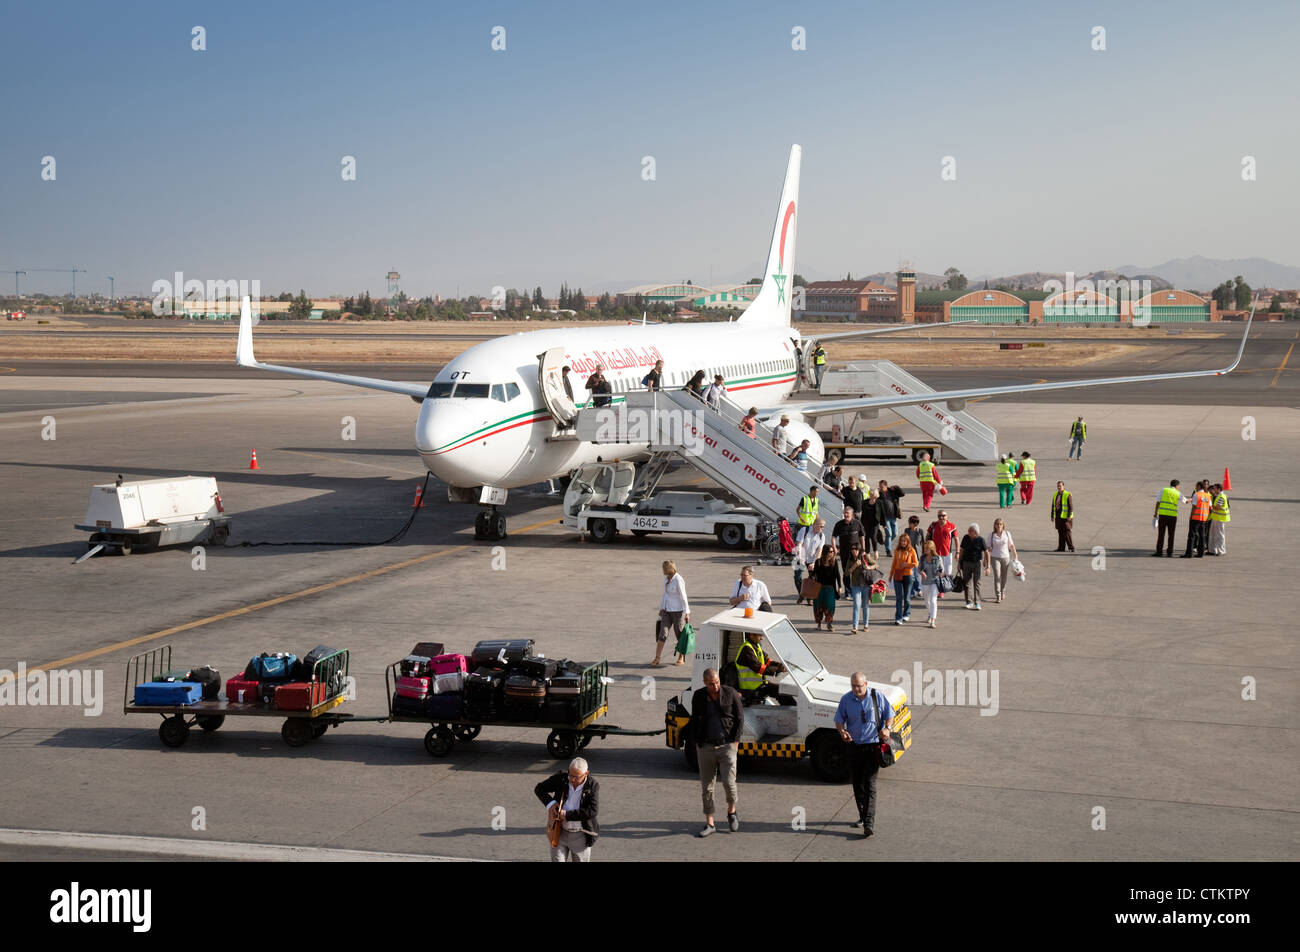 Royal Air Maroc-Flugzeug auf dem Boden am Flughafen von Marrakesch, Marokko Afrika Stockfoto